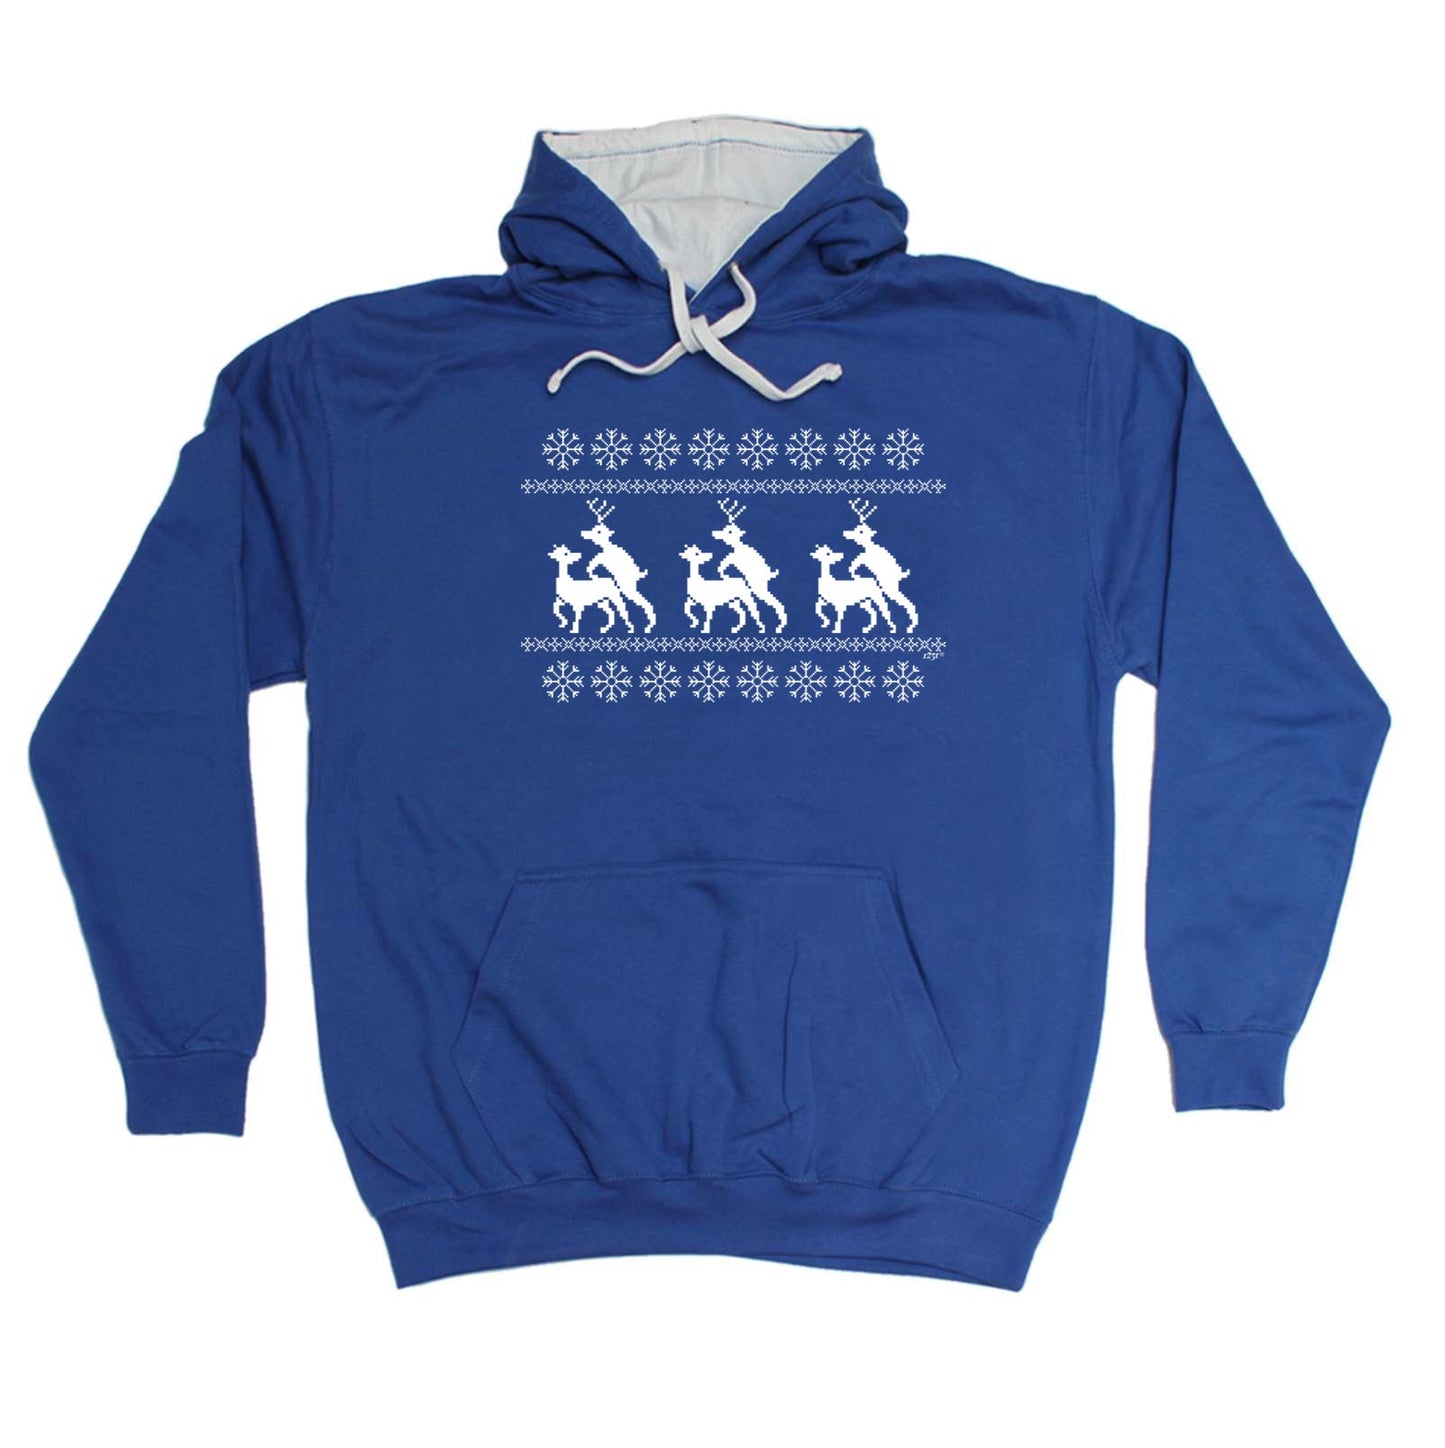 Christmas Reindeer Humping Jumper - Xmas Novelty Hoodies Hoodie